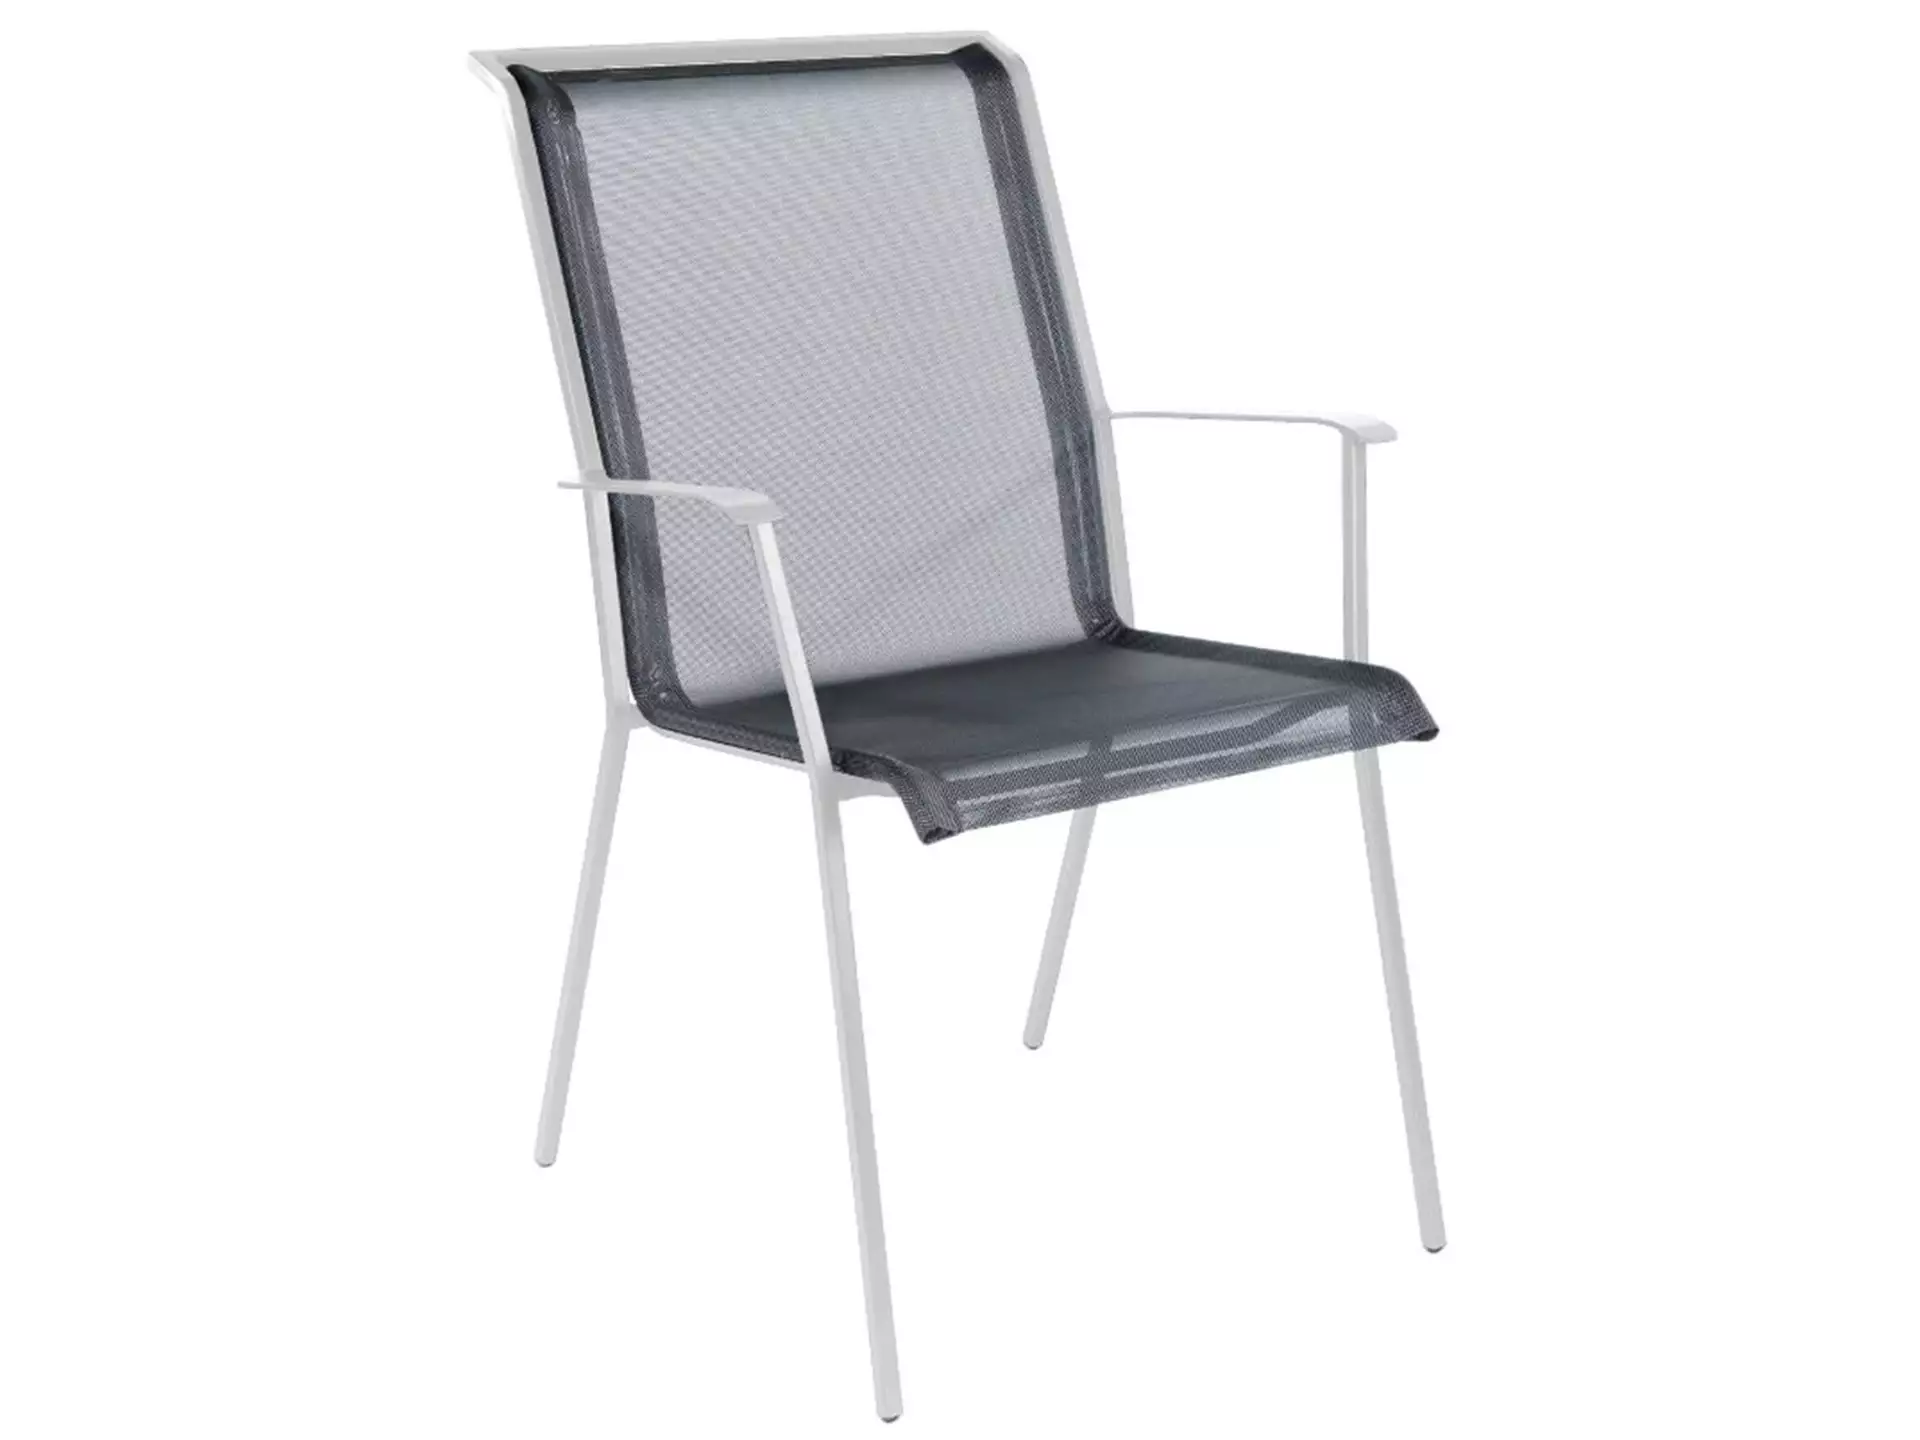 Matten-Sessel Chur Schaffner / Farbe: Grau